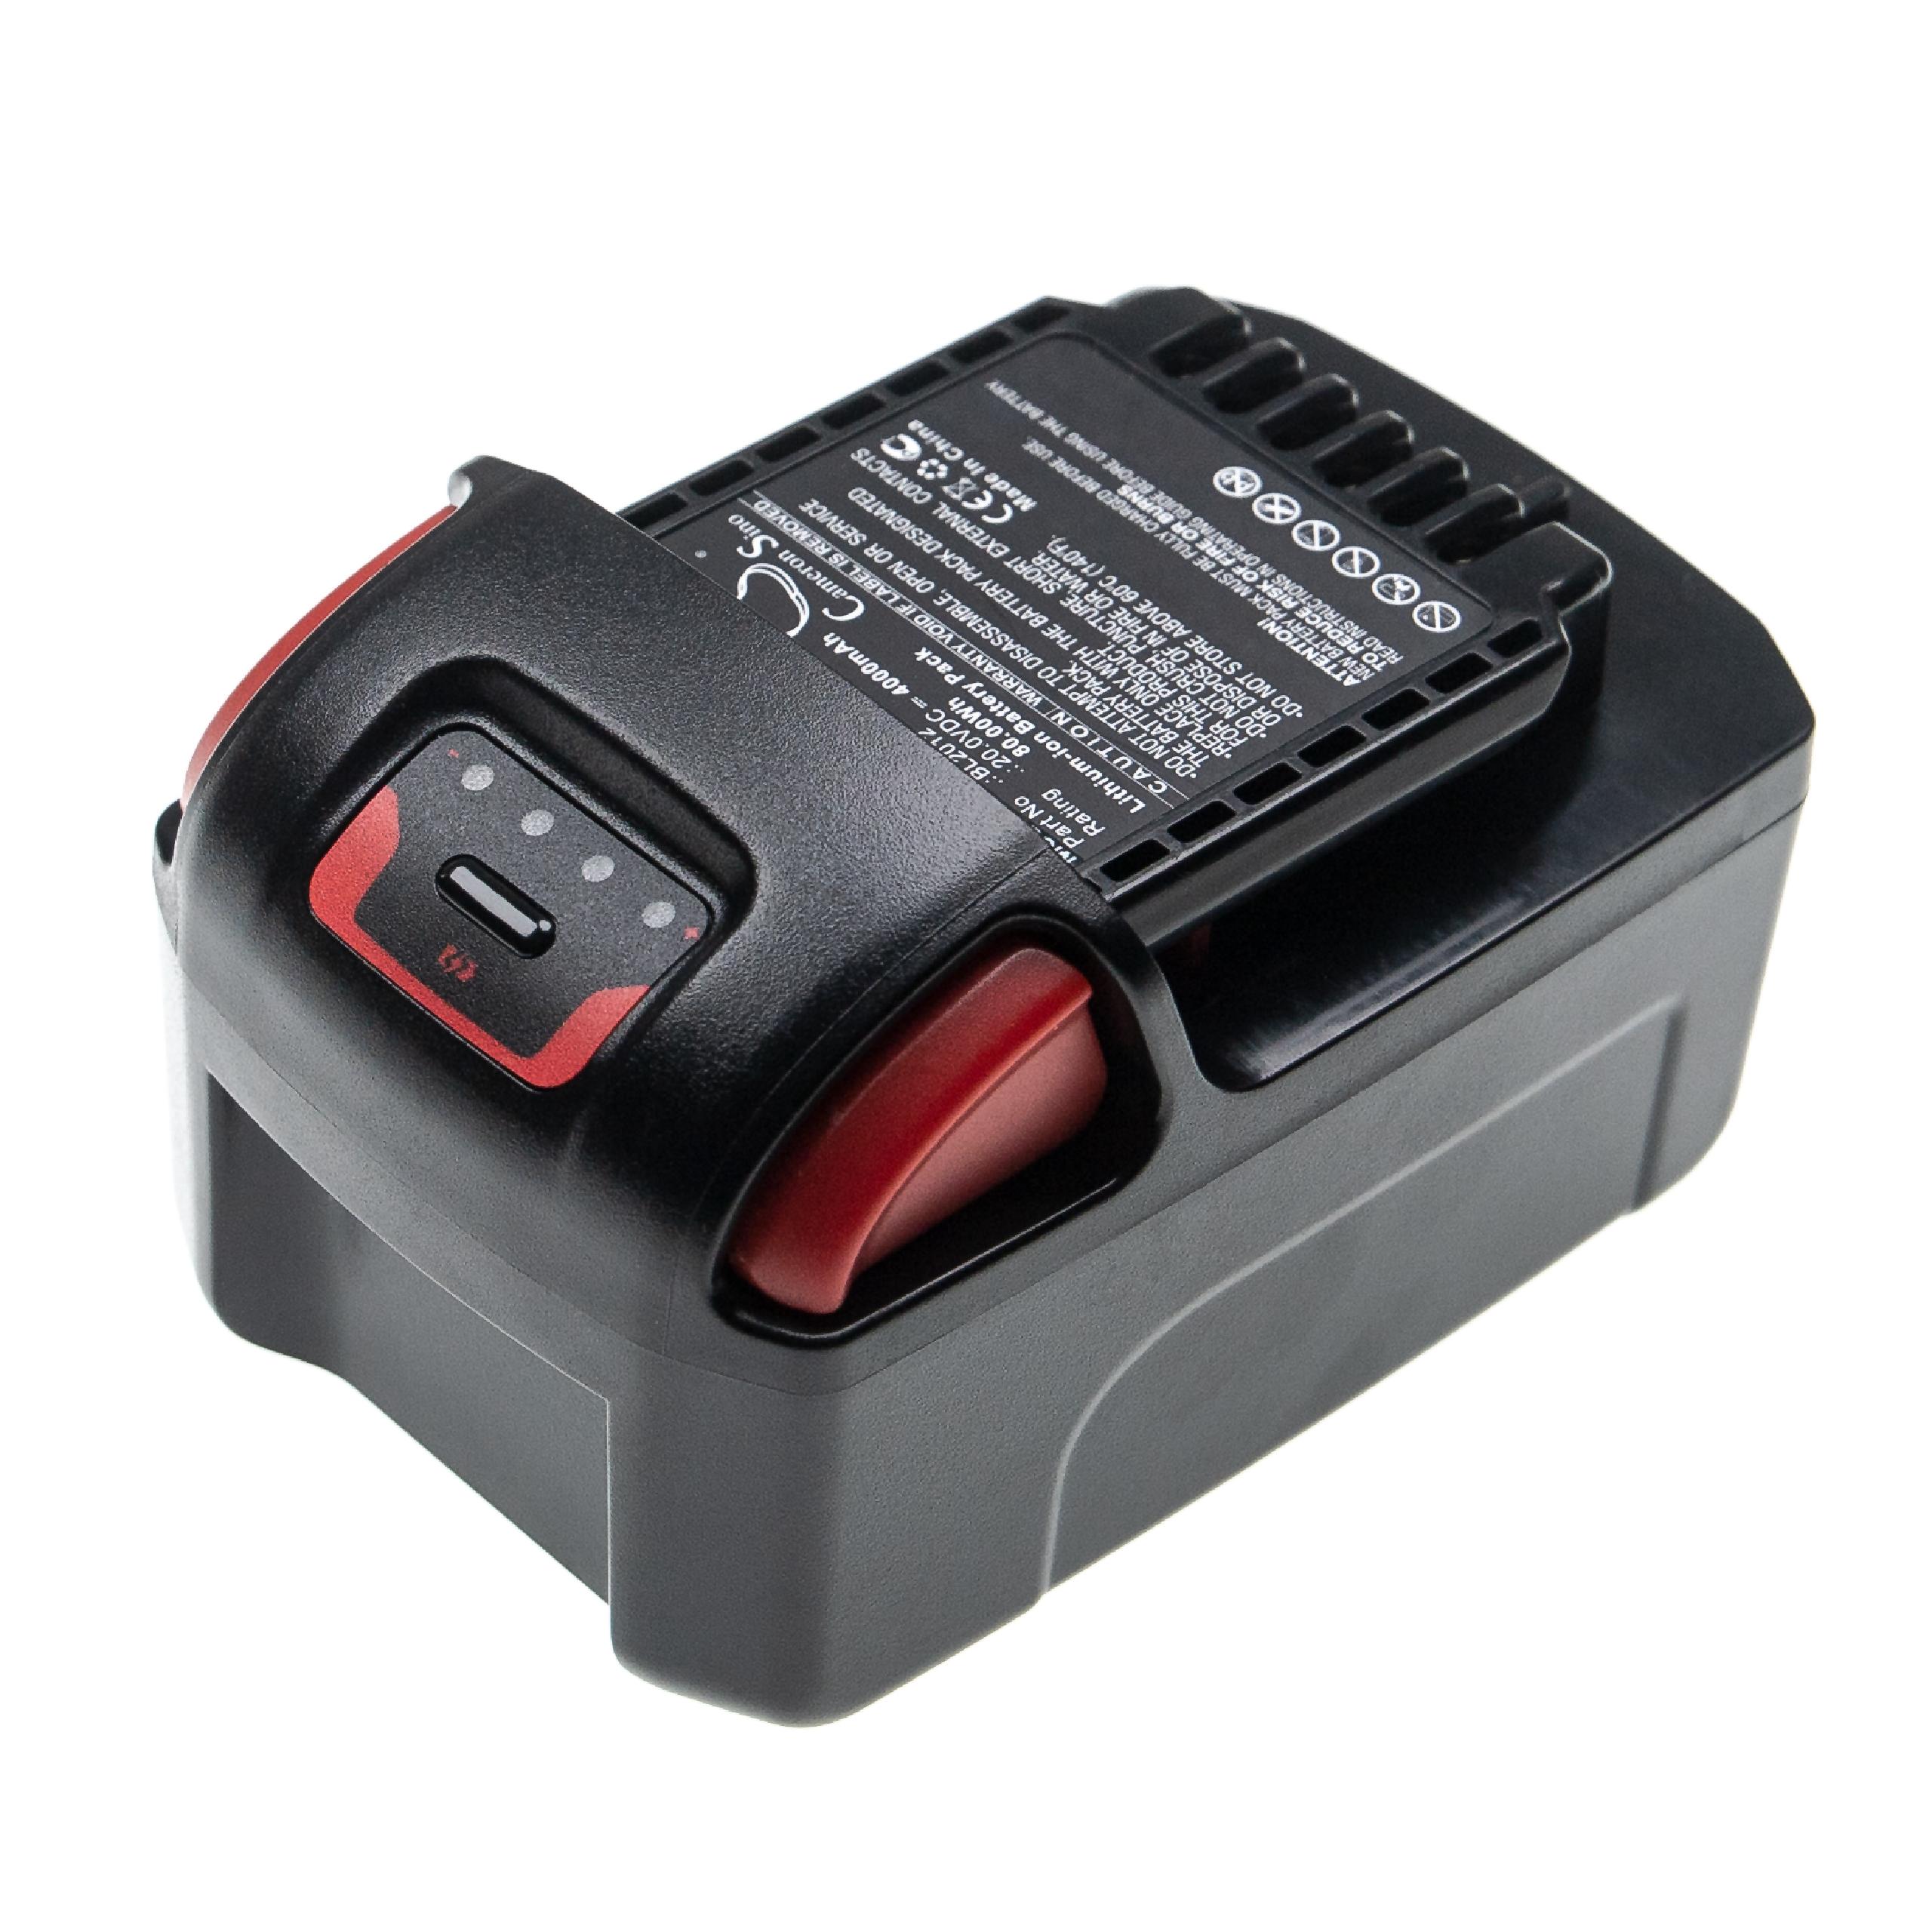 Batterie remplace Ingersoll Rand BL2022, BL2012, BL2010 pour outil électrique - 4000 mAh, 20 V, Li-ion